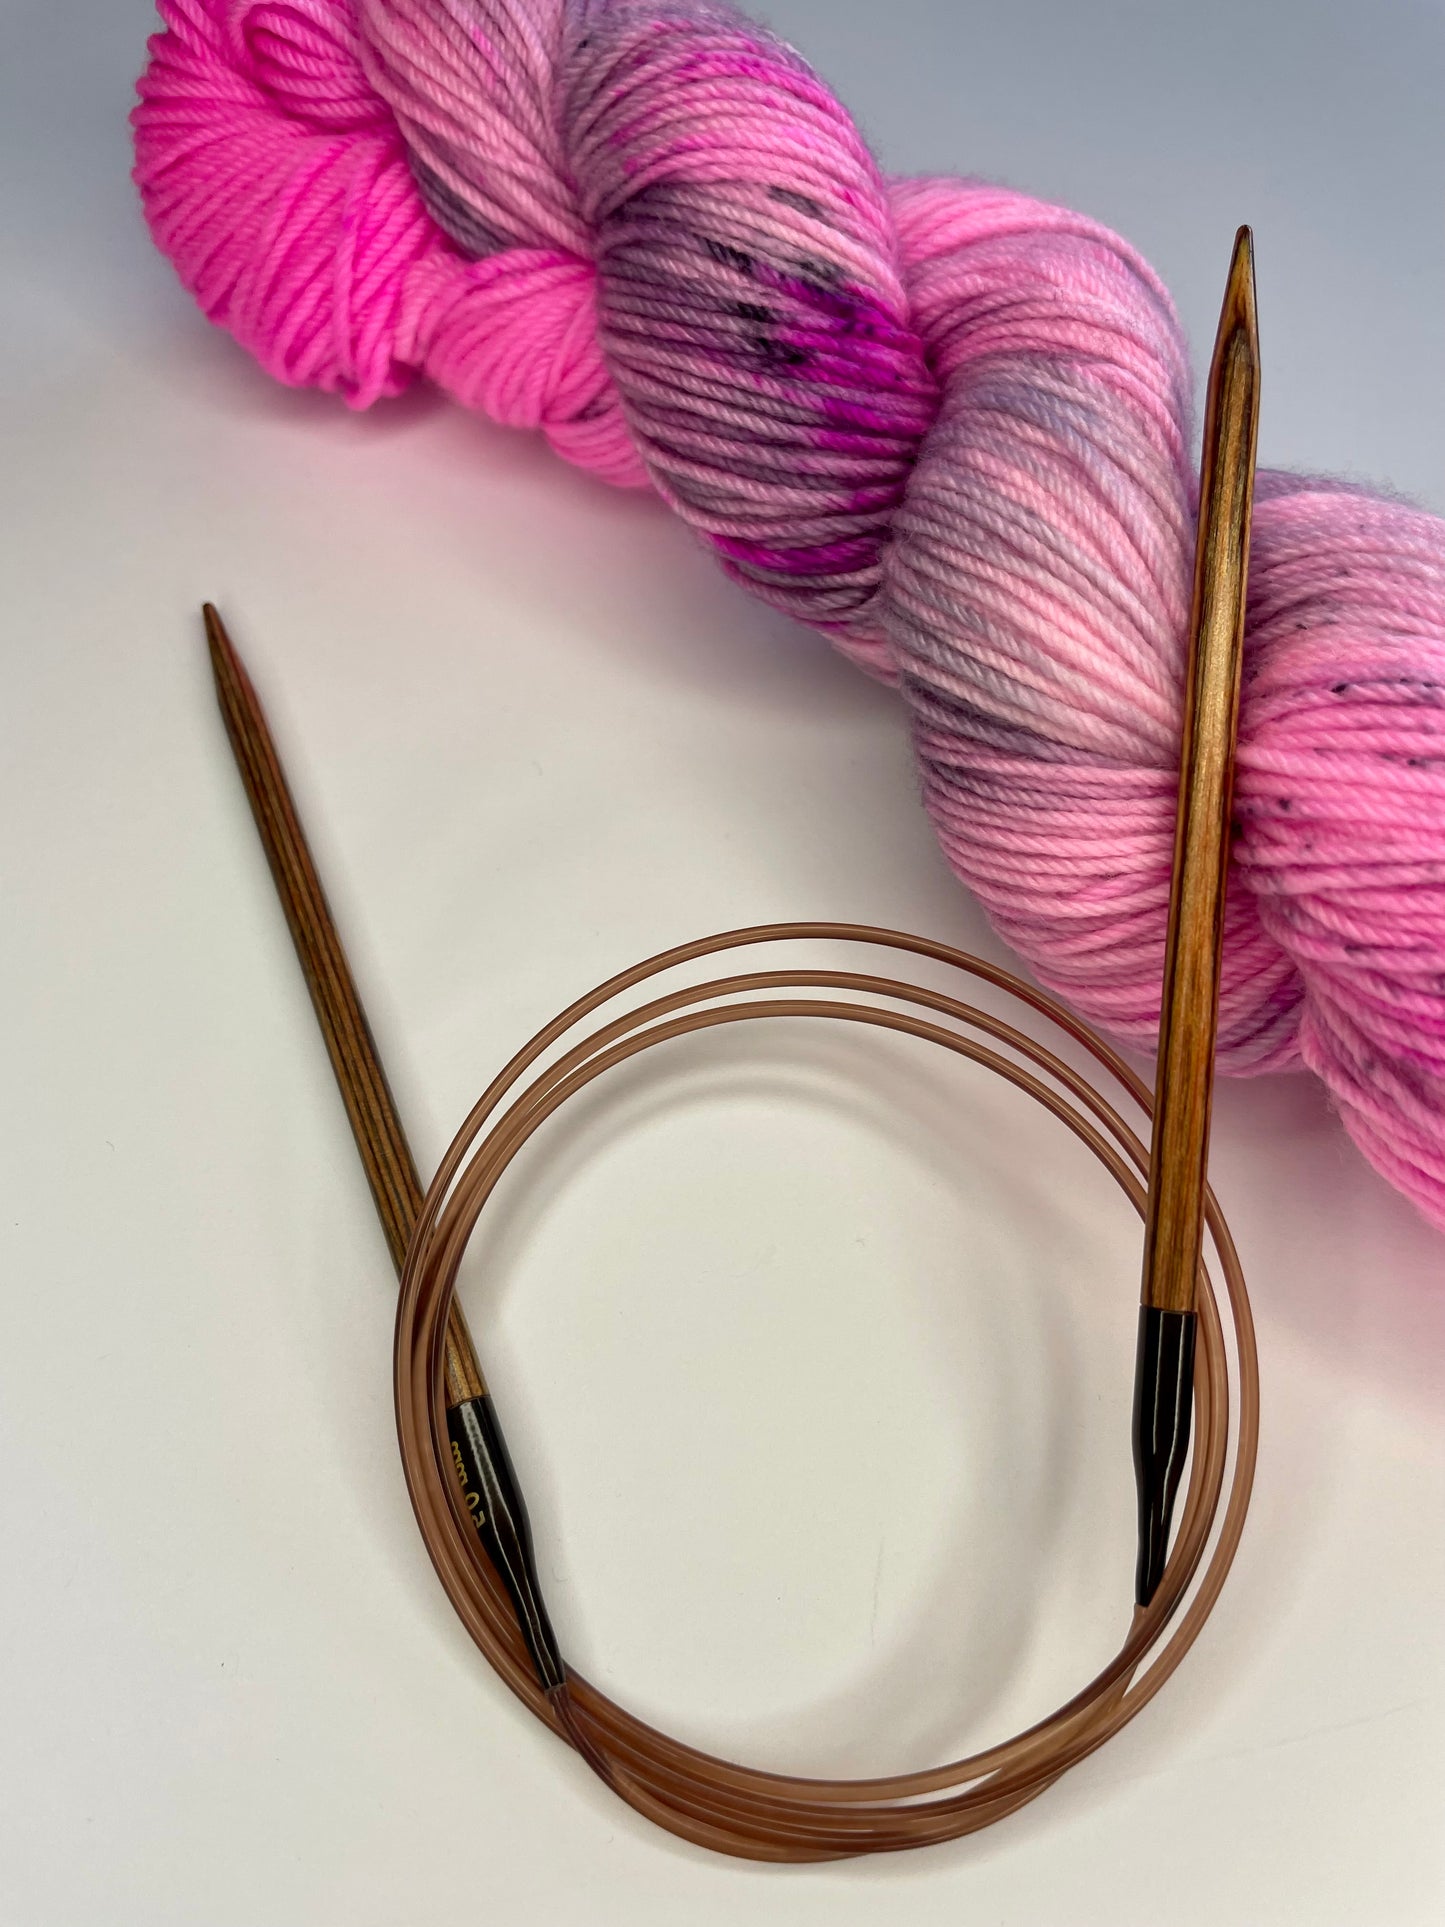 Knitpro Ginger et écheveau de laine teint à la main